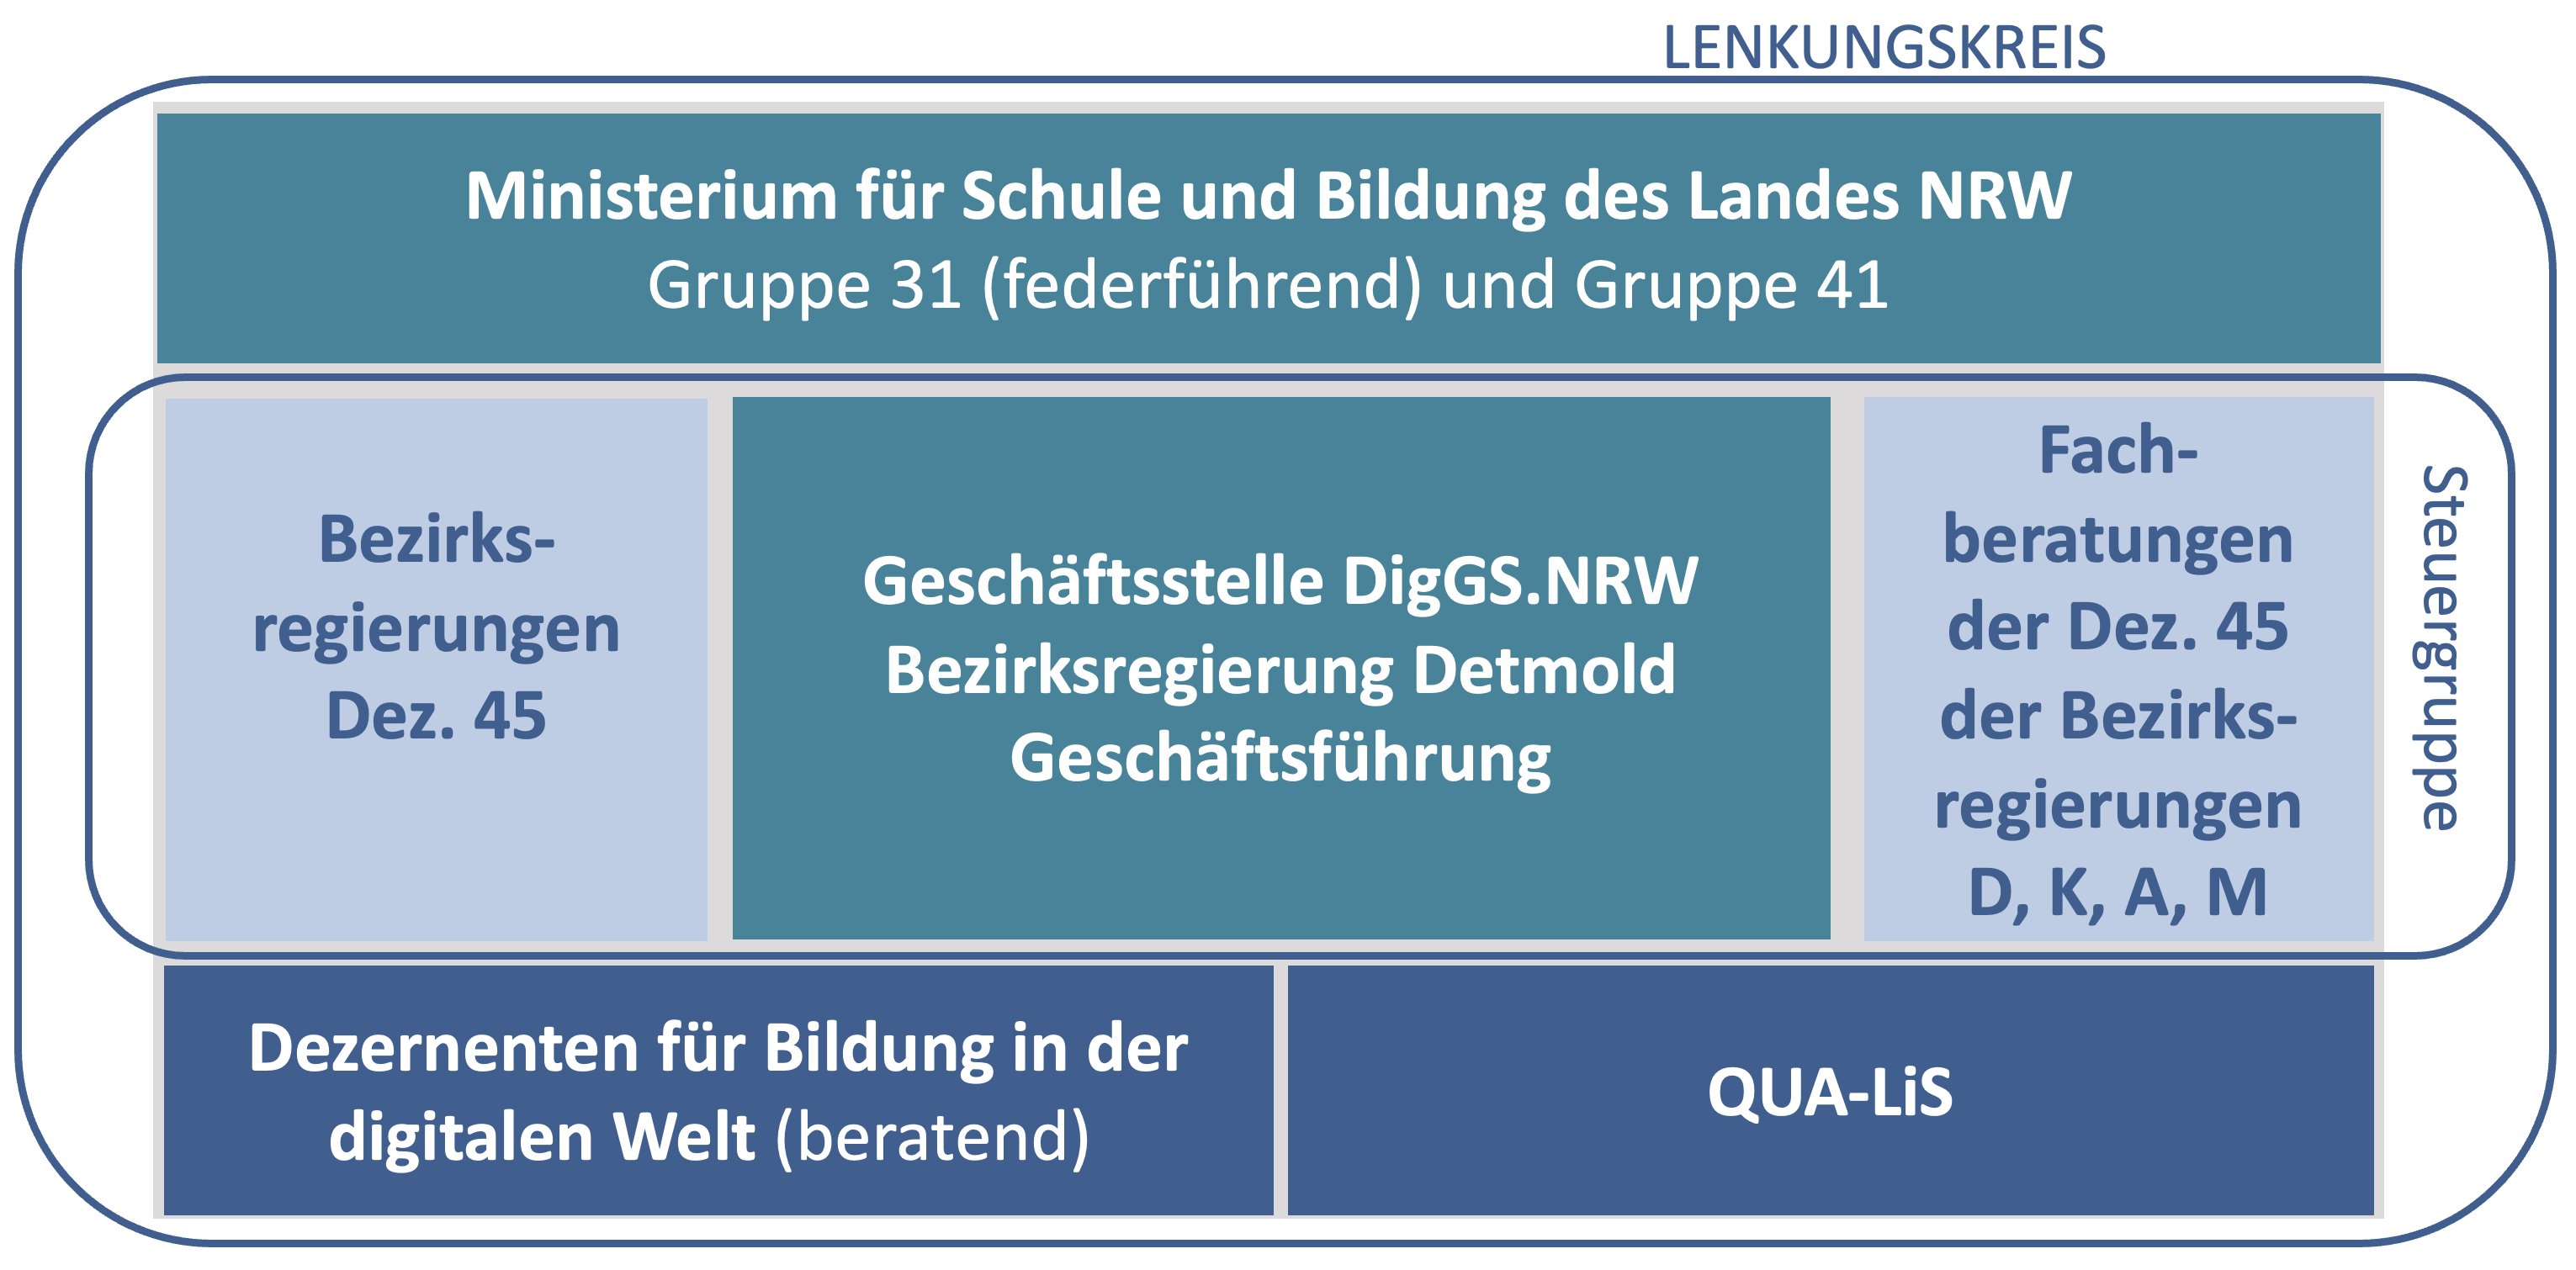 Die Steuergruppe der DigGS.NRW